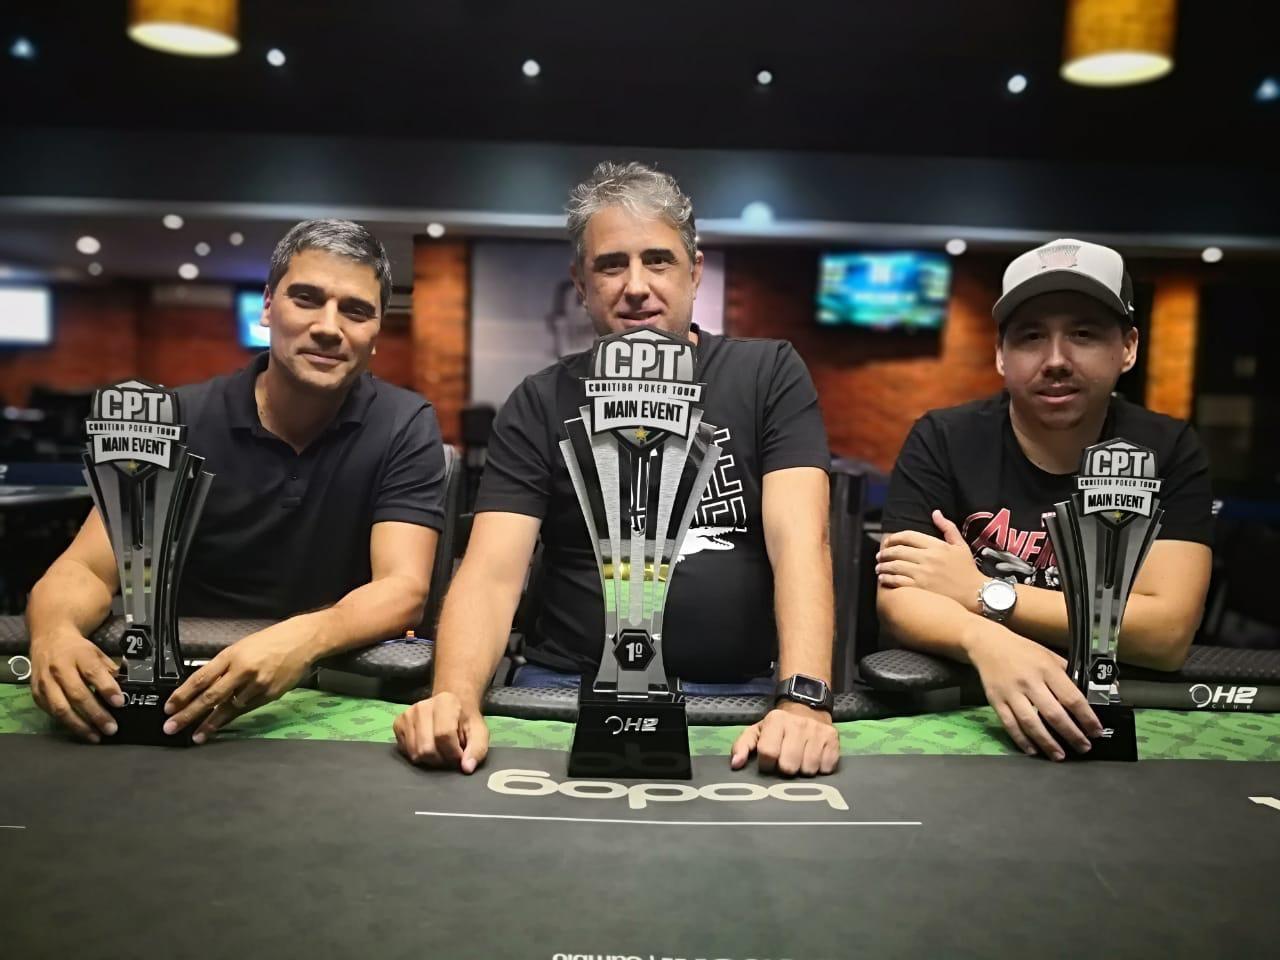 Torneio de poker em Curitiba fecha com 990 entradas e R$ 33 mil para um campeão bem conhecido